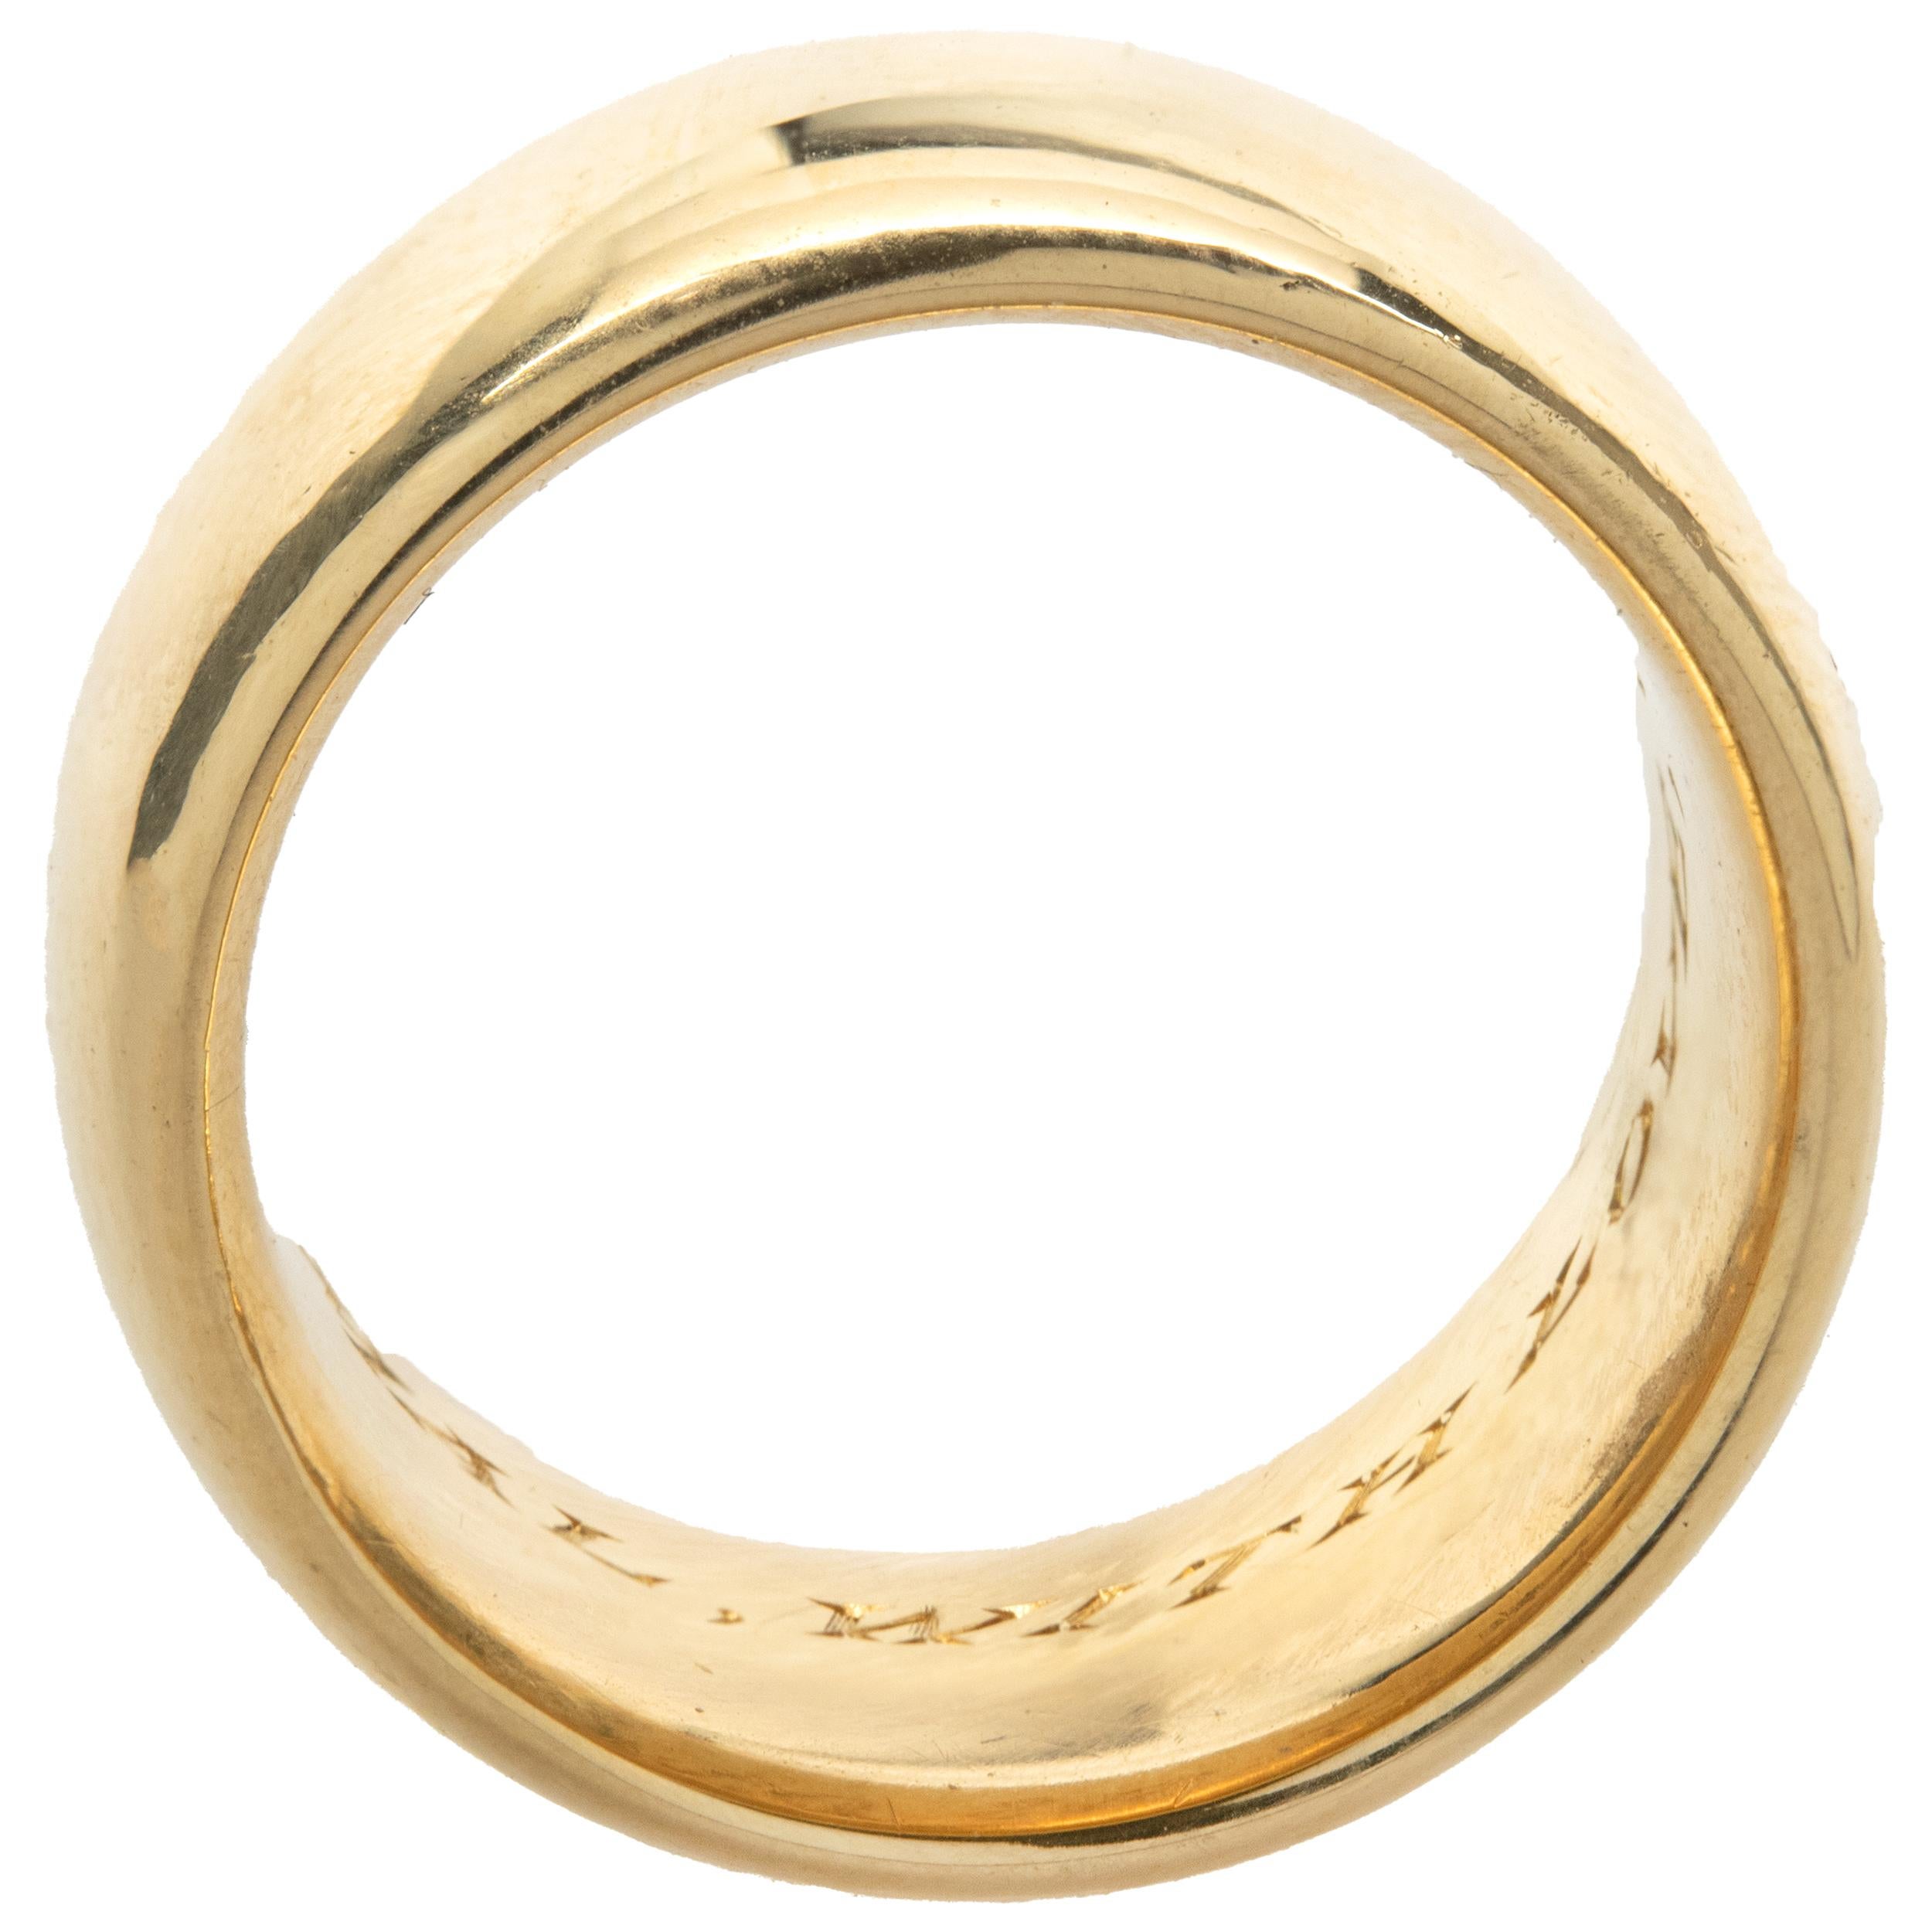 Cartier 18 Karat Gelbgold 10MM Band

Designer: Cartier
MATERIAL: 18K Gelbgold
Abmessungen: Ring misst 10MM breit
Größe: 5.5 (kostenlose Größenanpassung möglich)
Seriennummer 37XXX
Gewicht: 15,02g